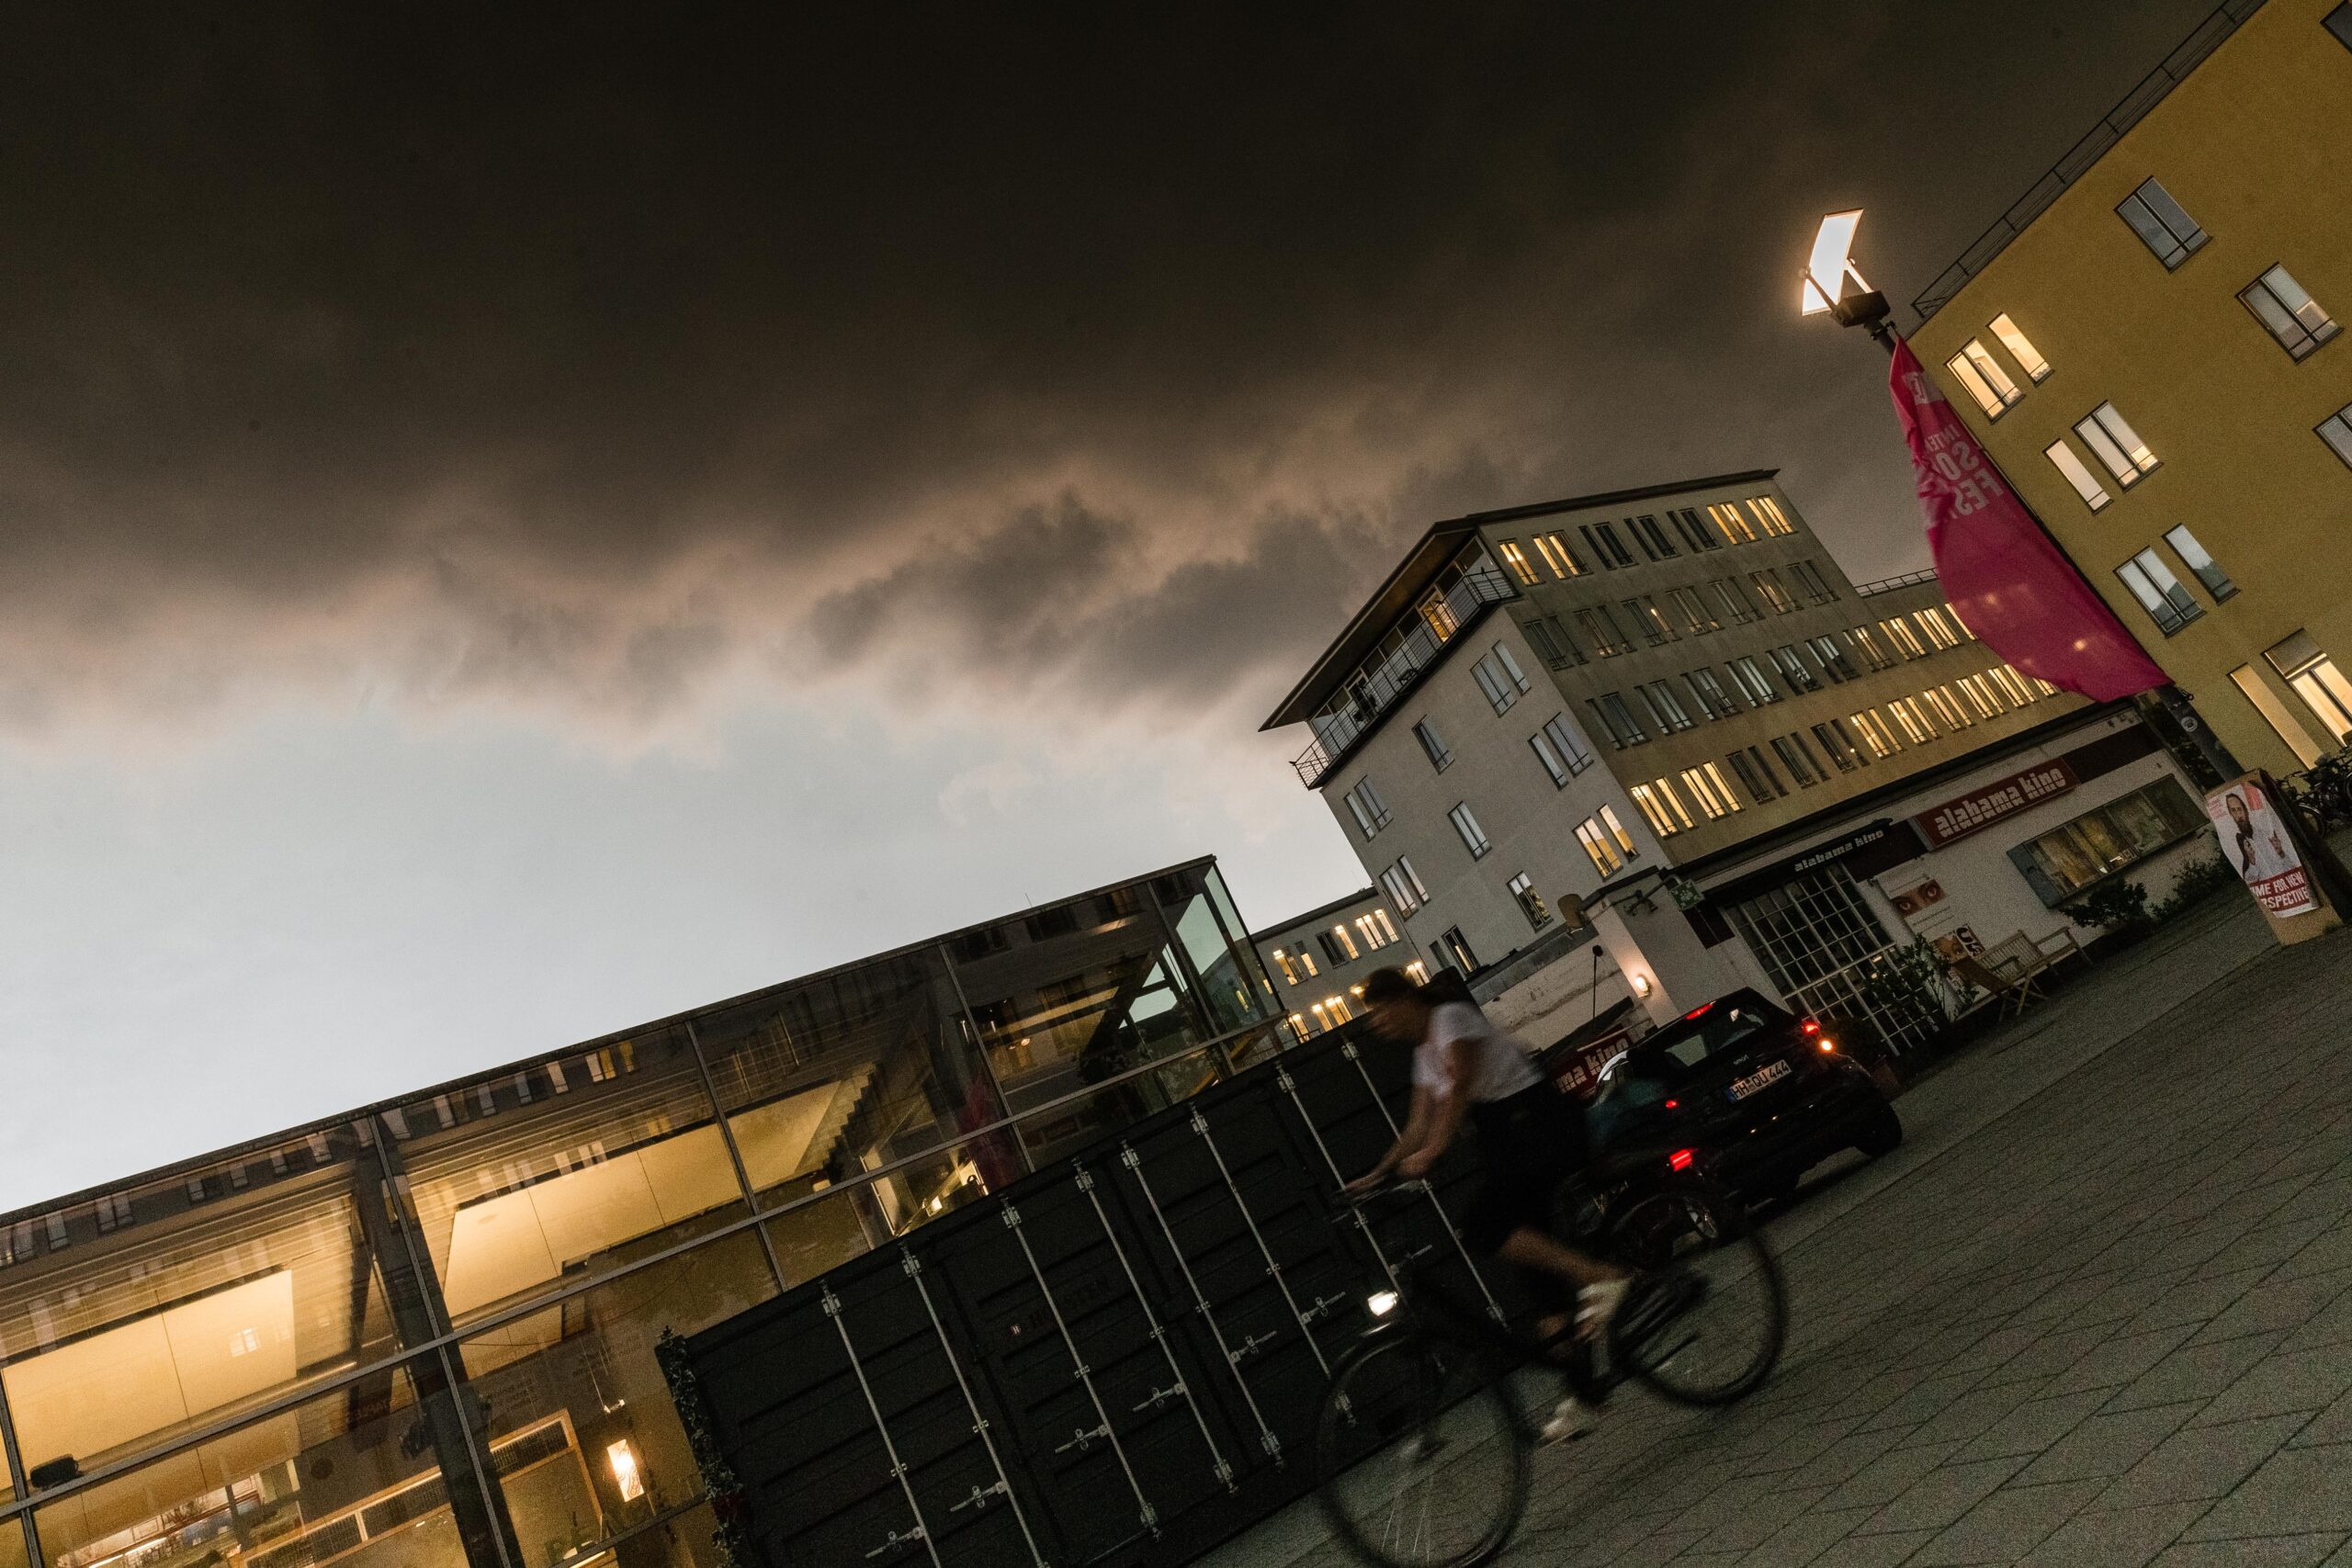 Archivbild: Eine Unwetterfront zieht über den Hamburger Stadtteil Winterhude.